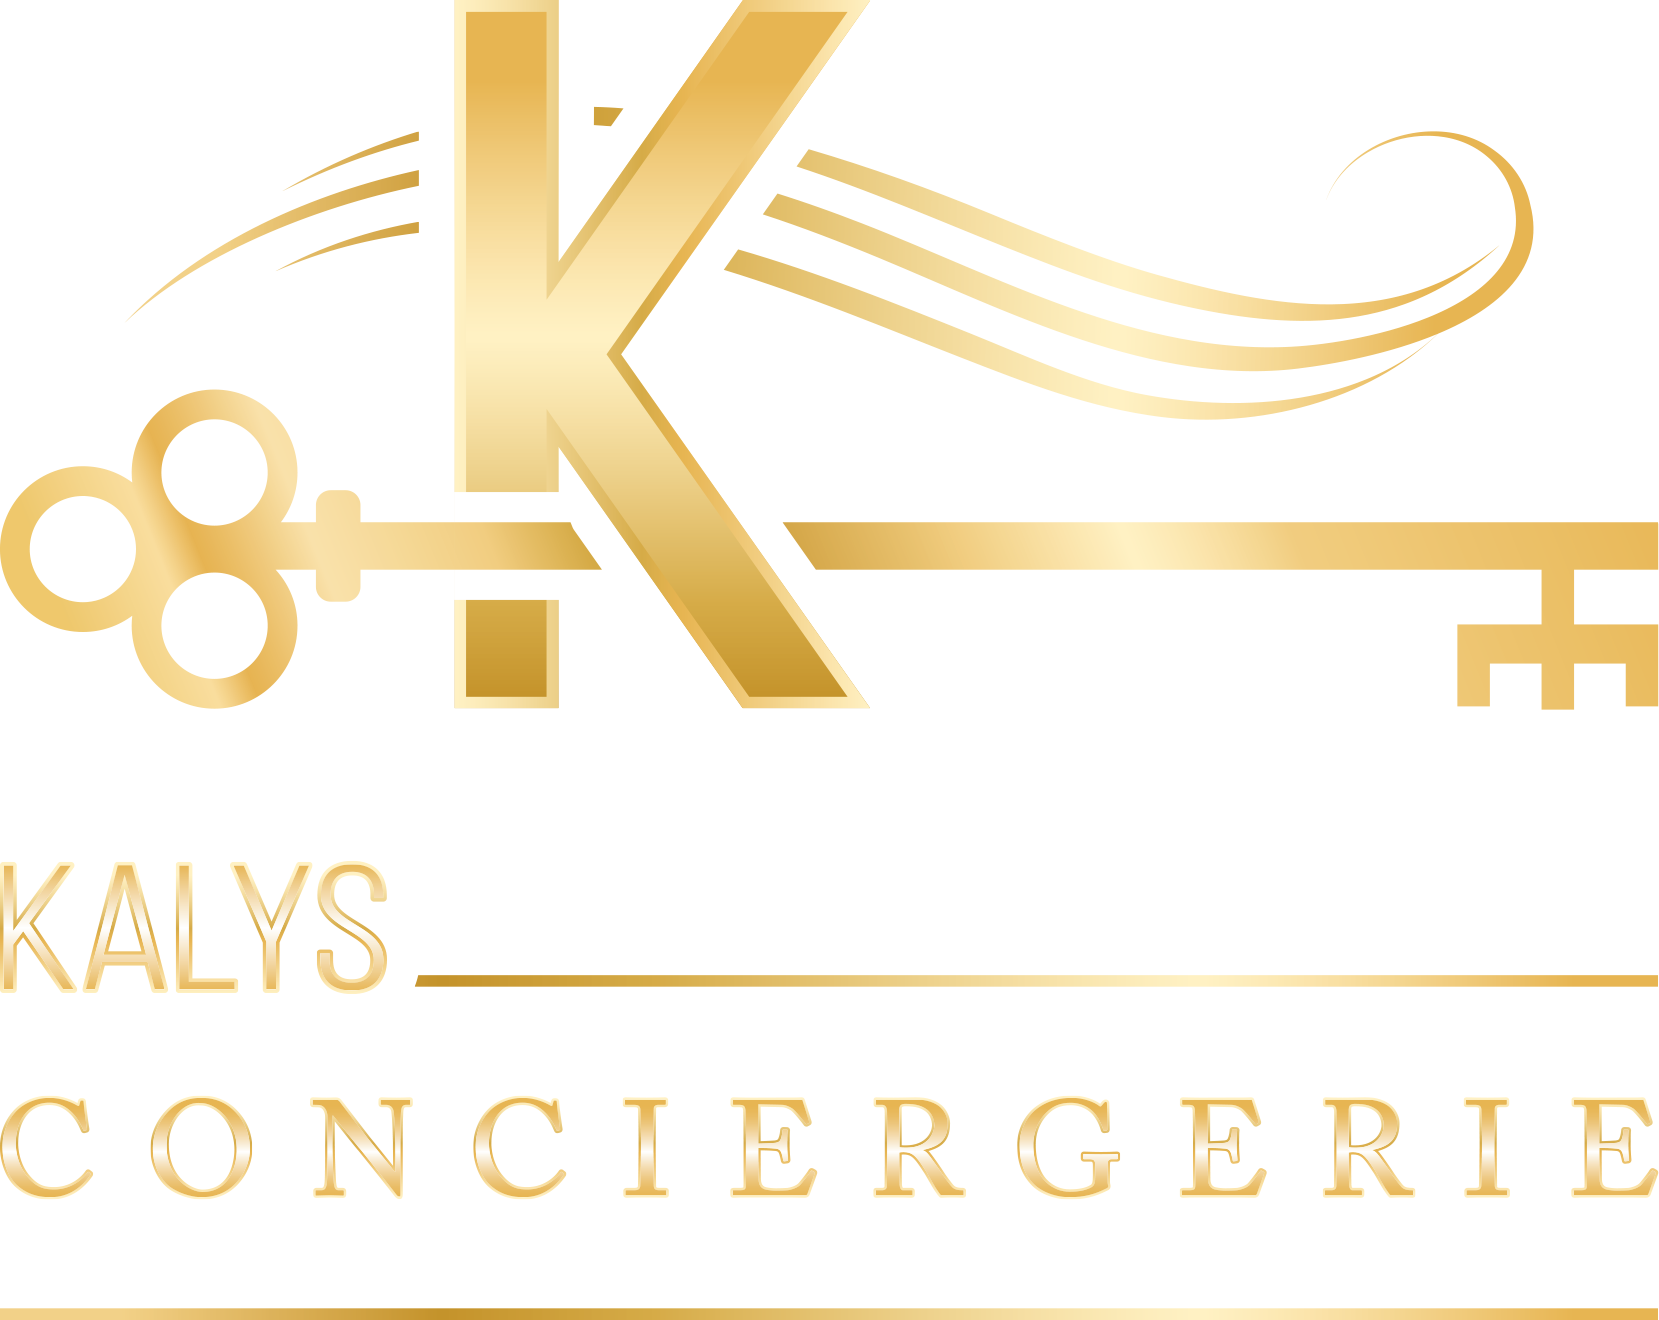 Kalys Conciergerie